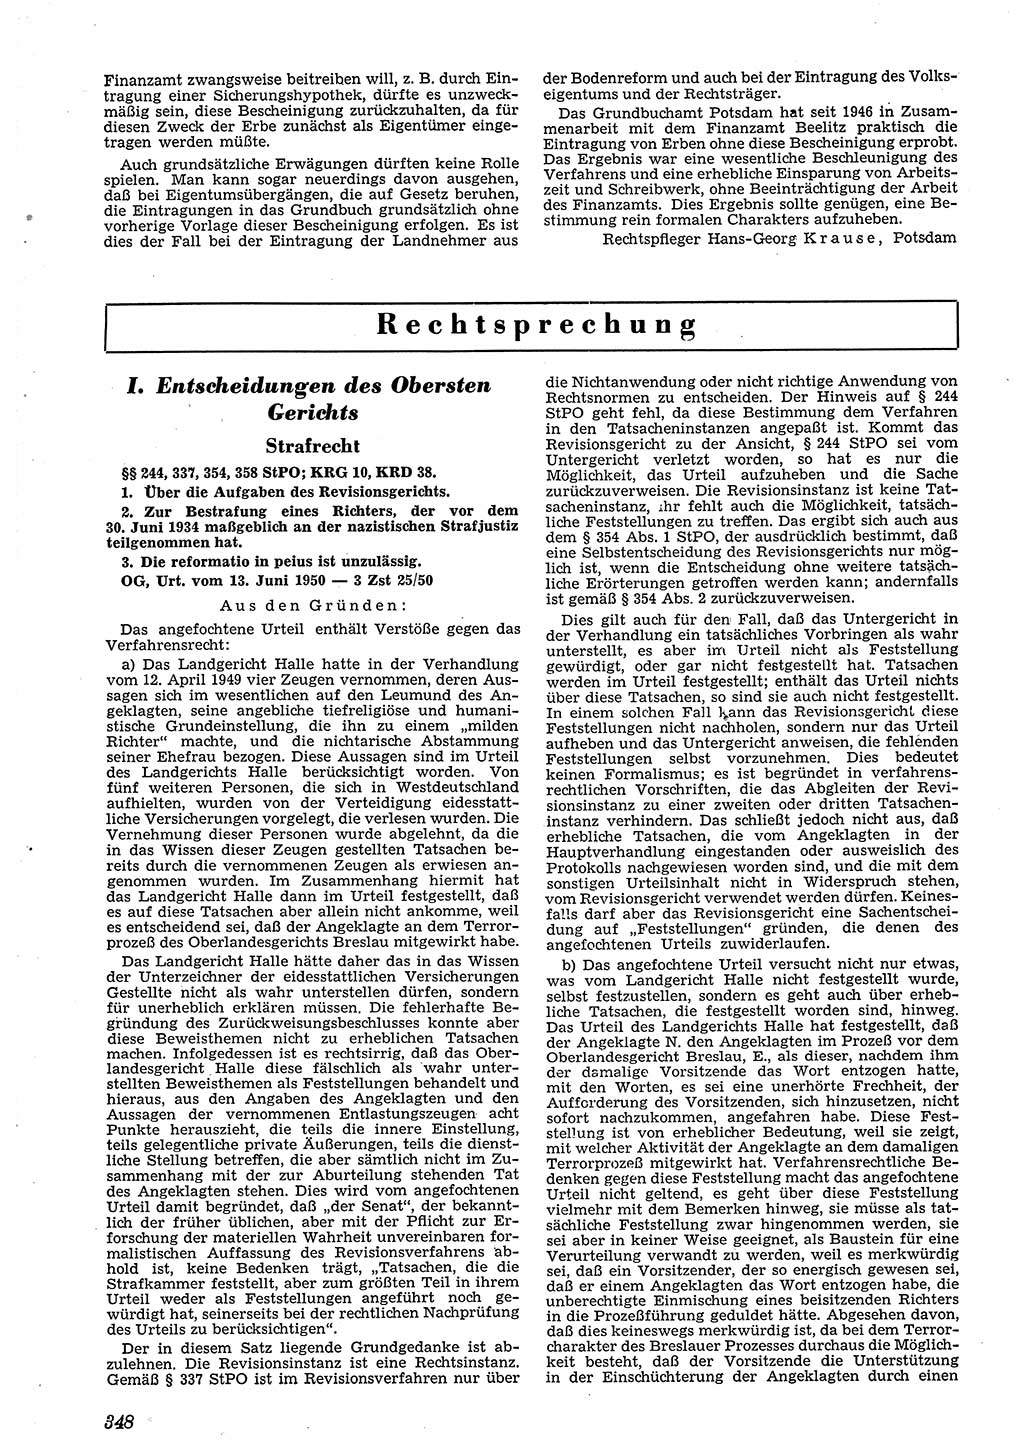 Neue Justiz (NJ), Zeitschrift für Recht und Rechtswissenschaft [Deutsche Demokratische Republik (DDR)], 4. Jahrgang 1950, Seite 348 (NJ DDR 1950, S. 348)